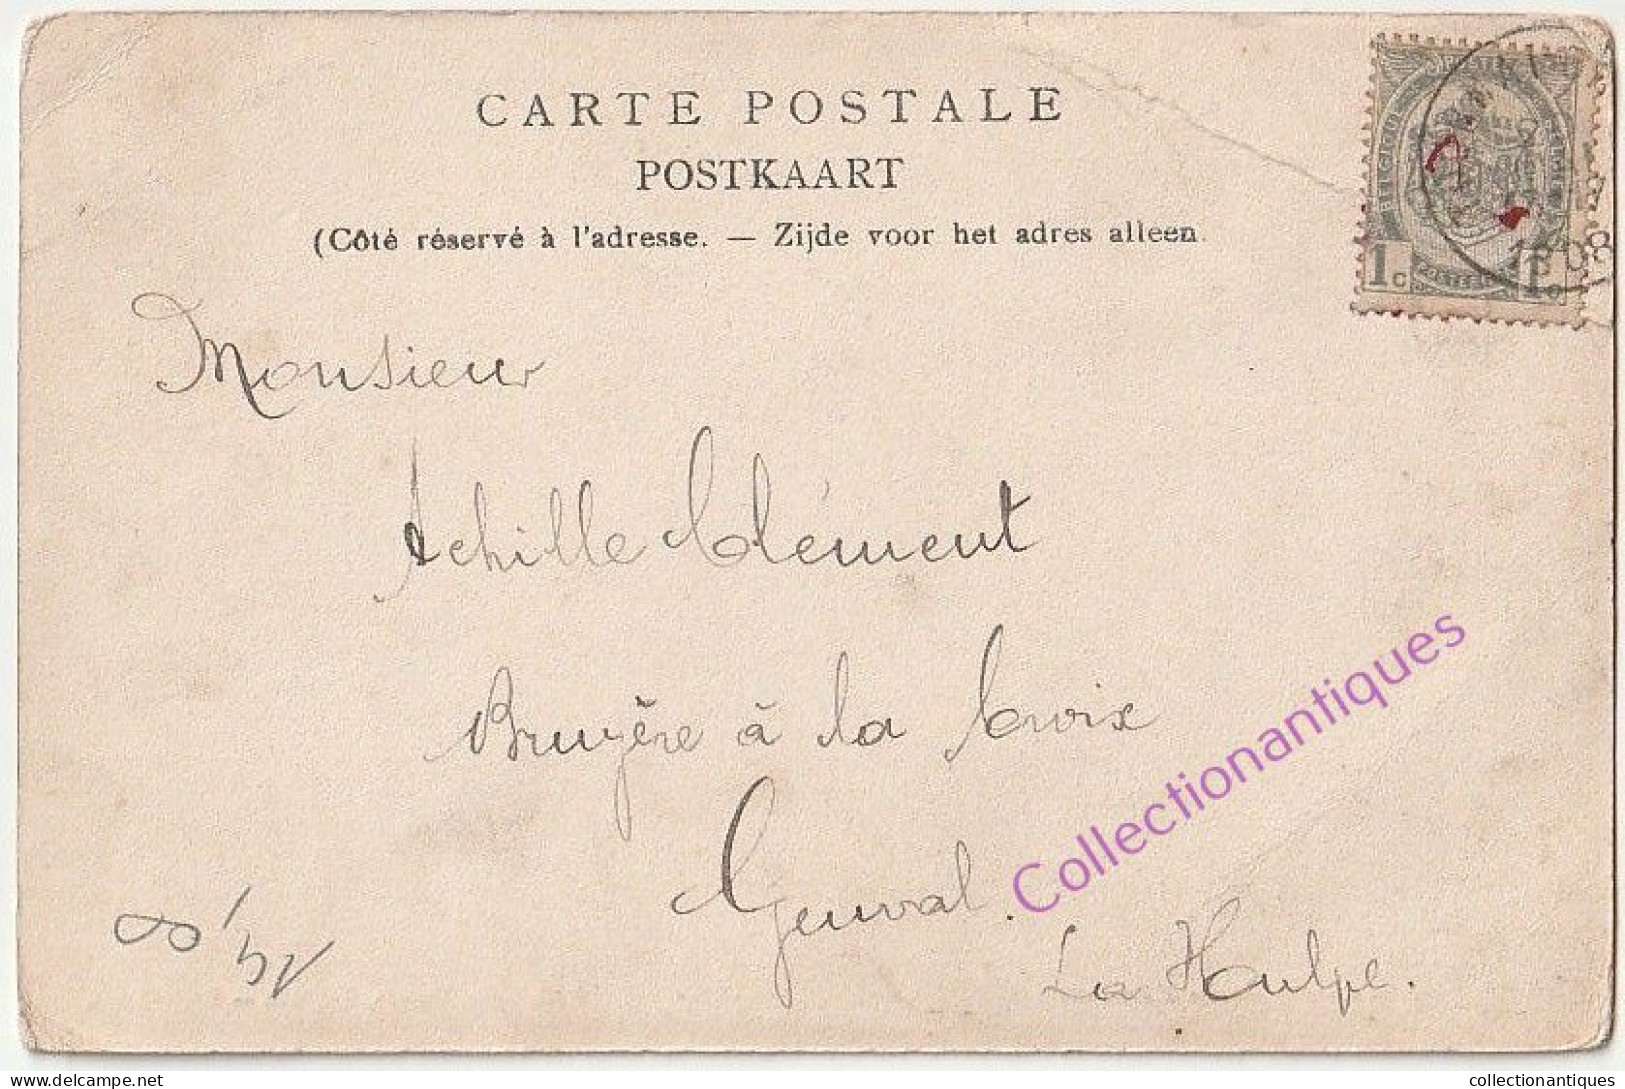 CPA Enghien - Porte D'Hoves - Circulée - Non Divisé - 1908 - Edit. Edm. Duwez, Enghien - Enghien - Edingen